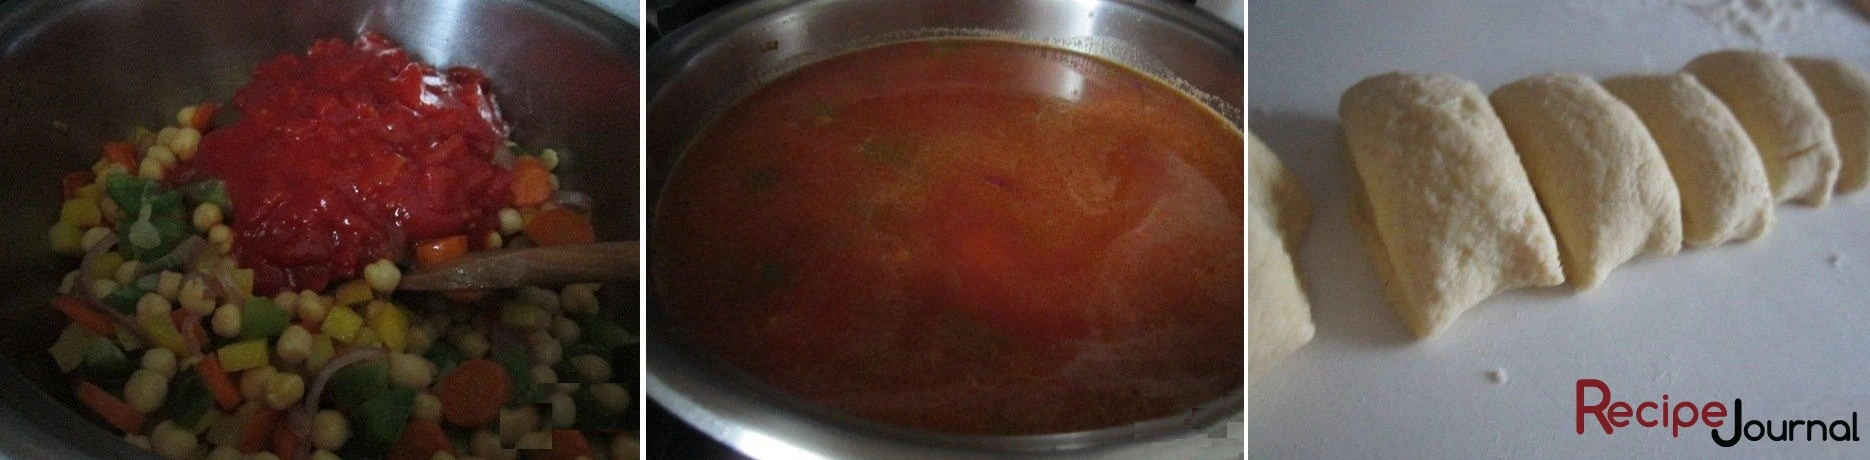 Добавить помидоры в томате  и перемешать, немного обжарить. Залить овощным бульоном и варить на слабом огне до полной готовности овощей. Затем посолить. Тесто раскатать в колбаску и нарезать шайбочками шириной примерно 1,5 см..